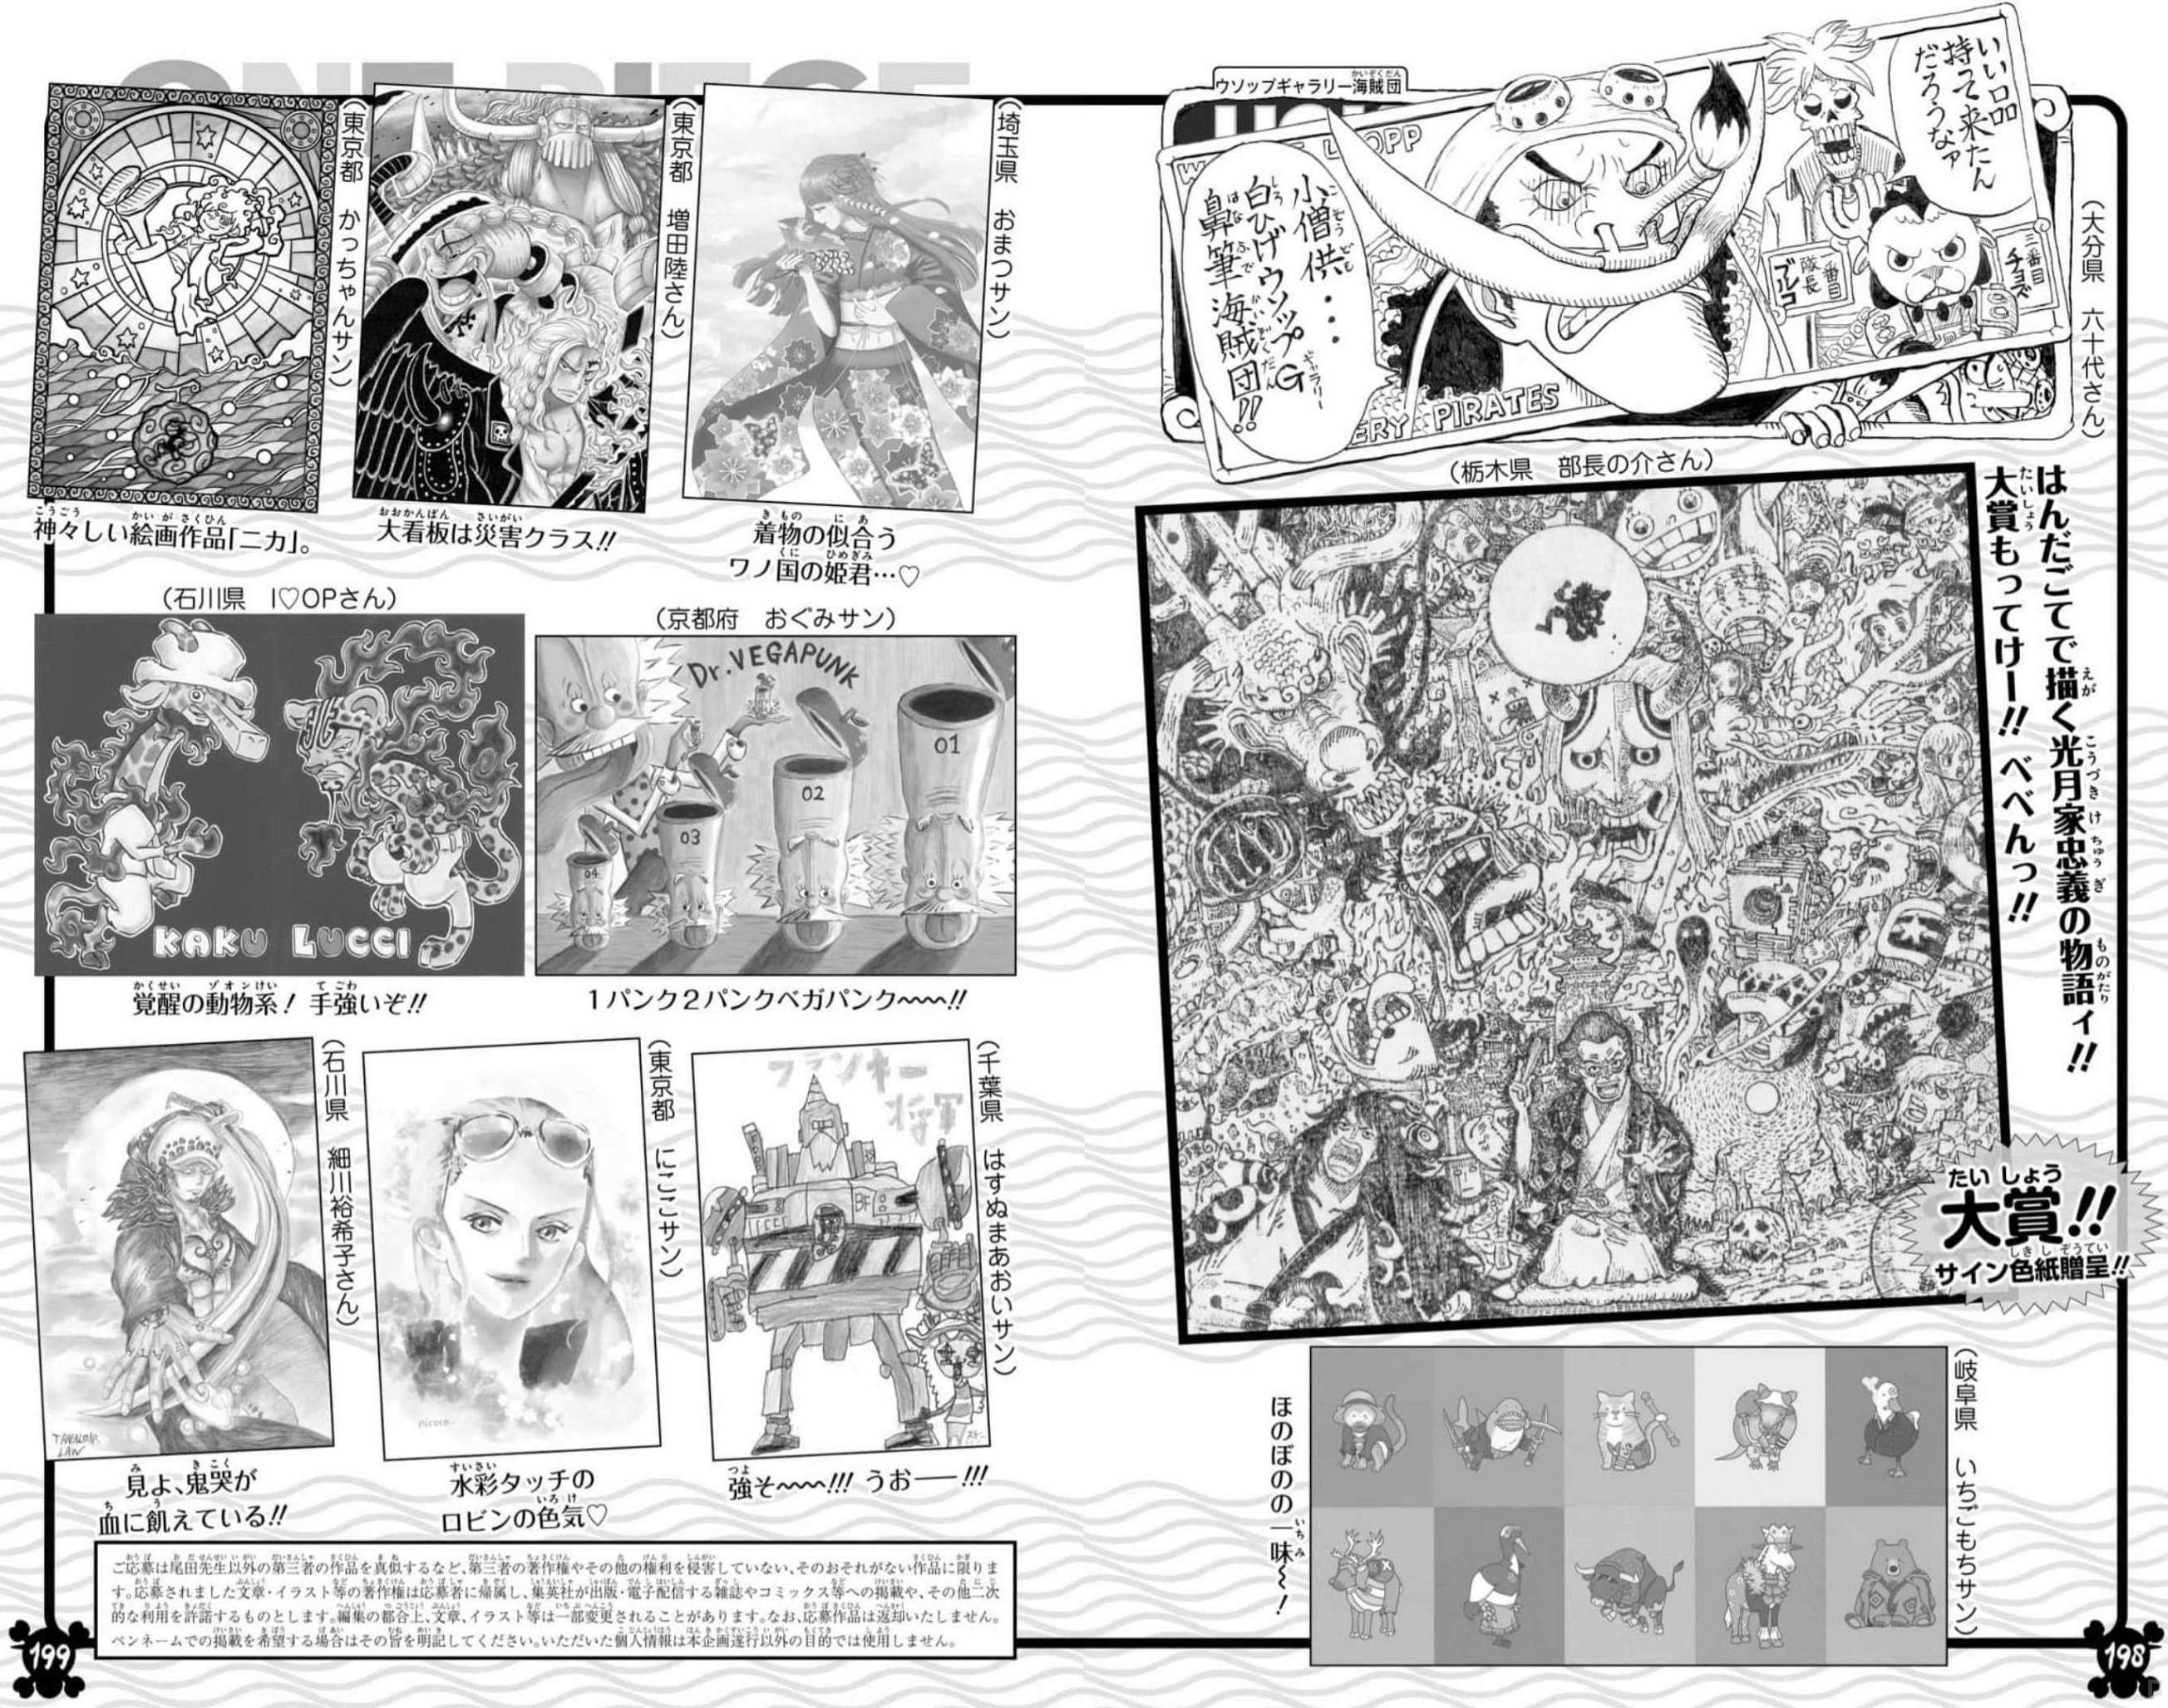 Volume 106 | One Piece Wiki | Fandom